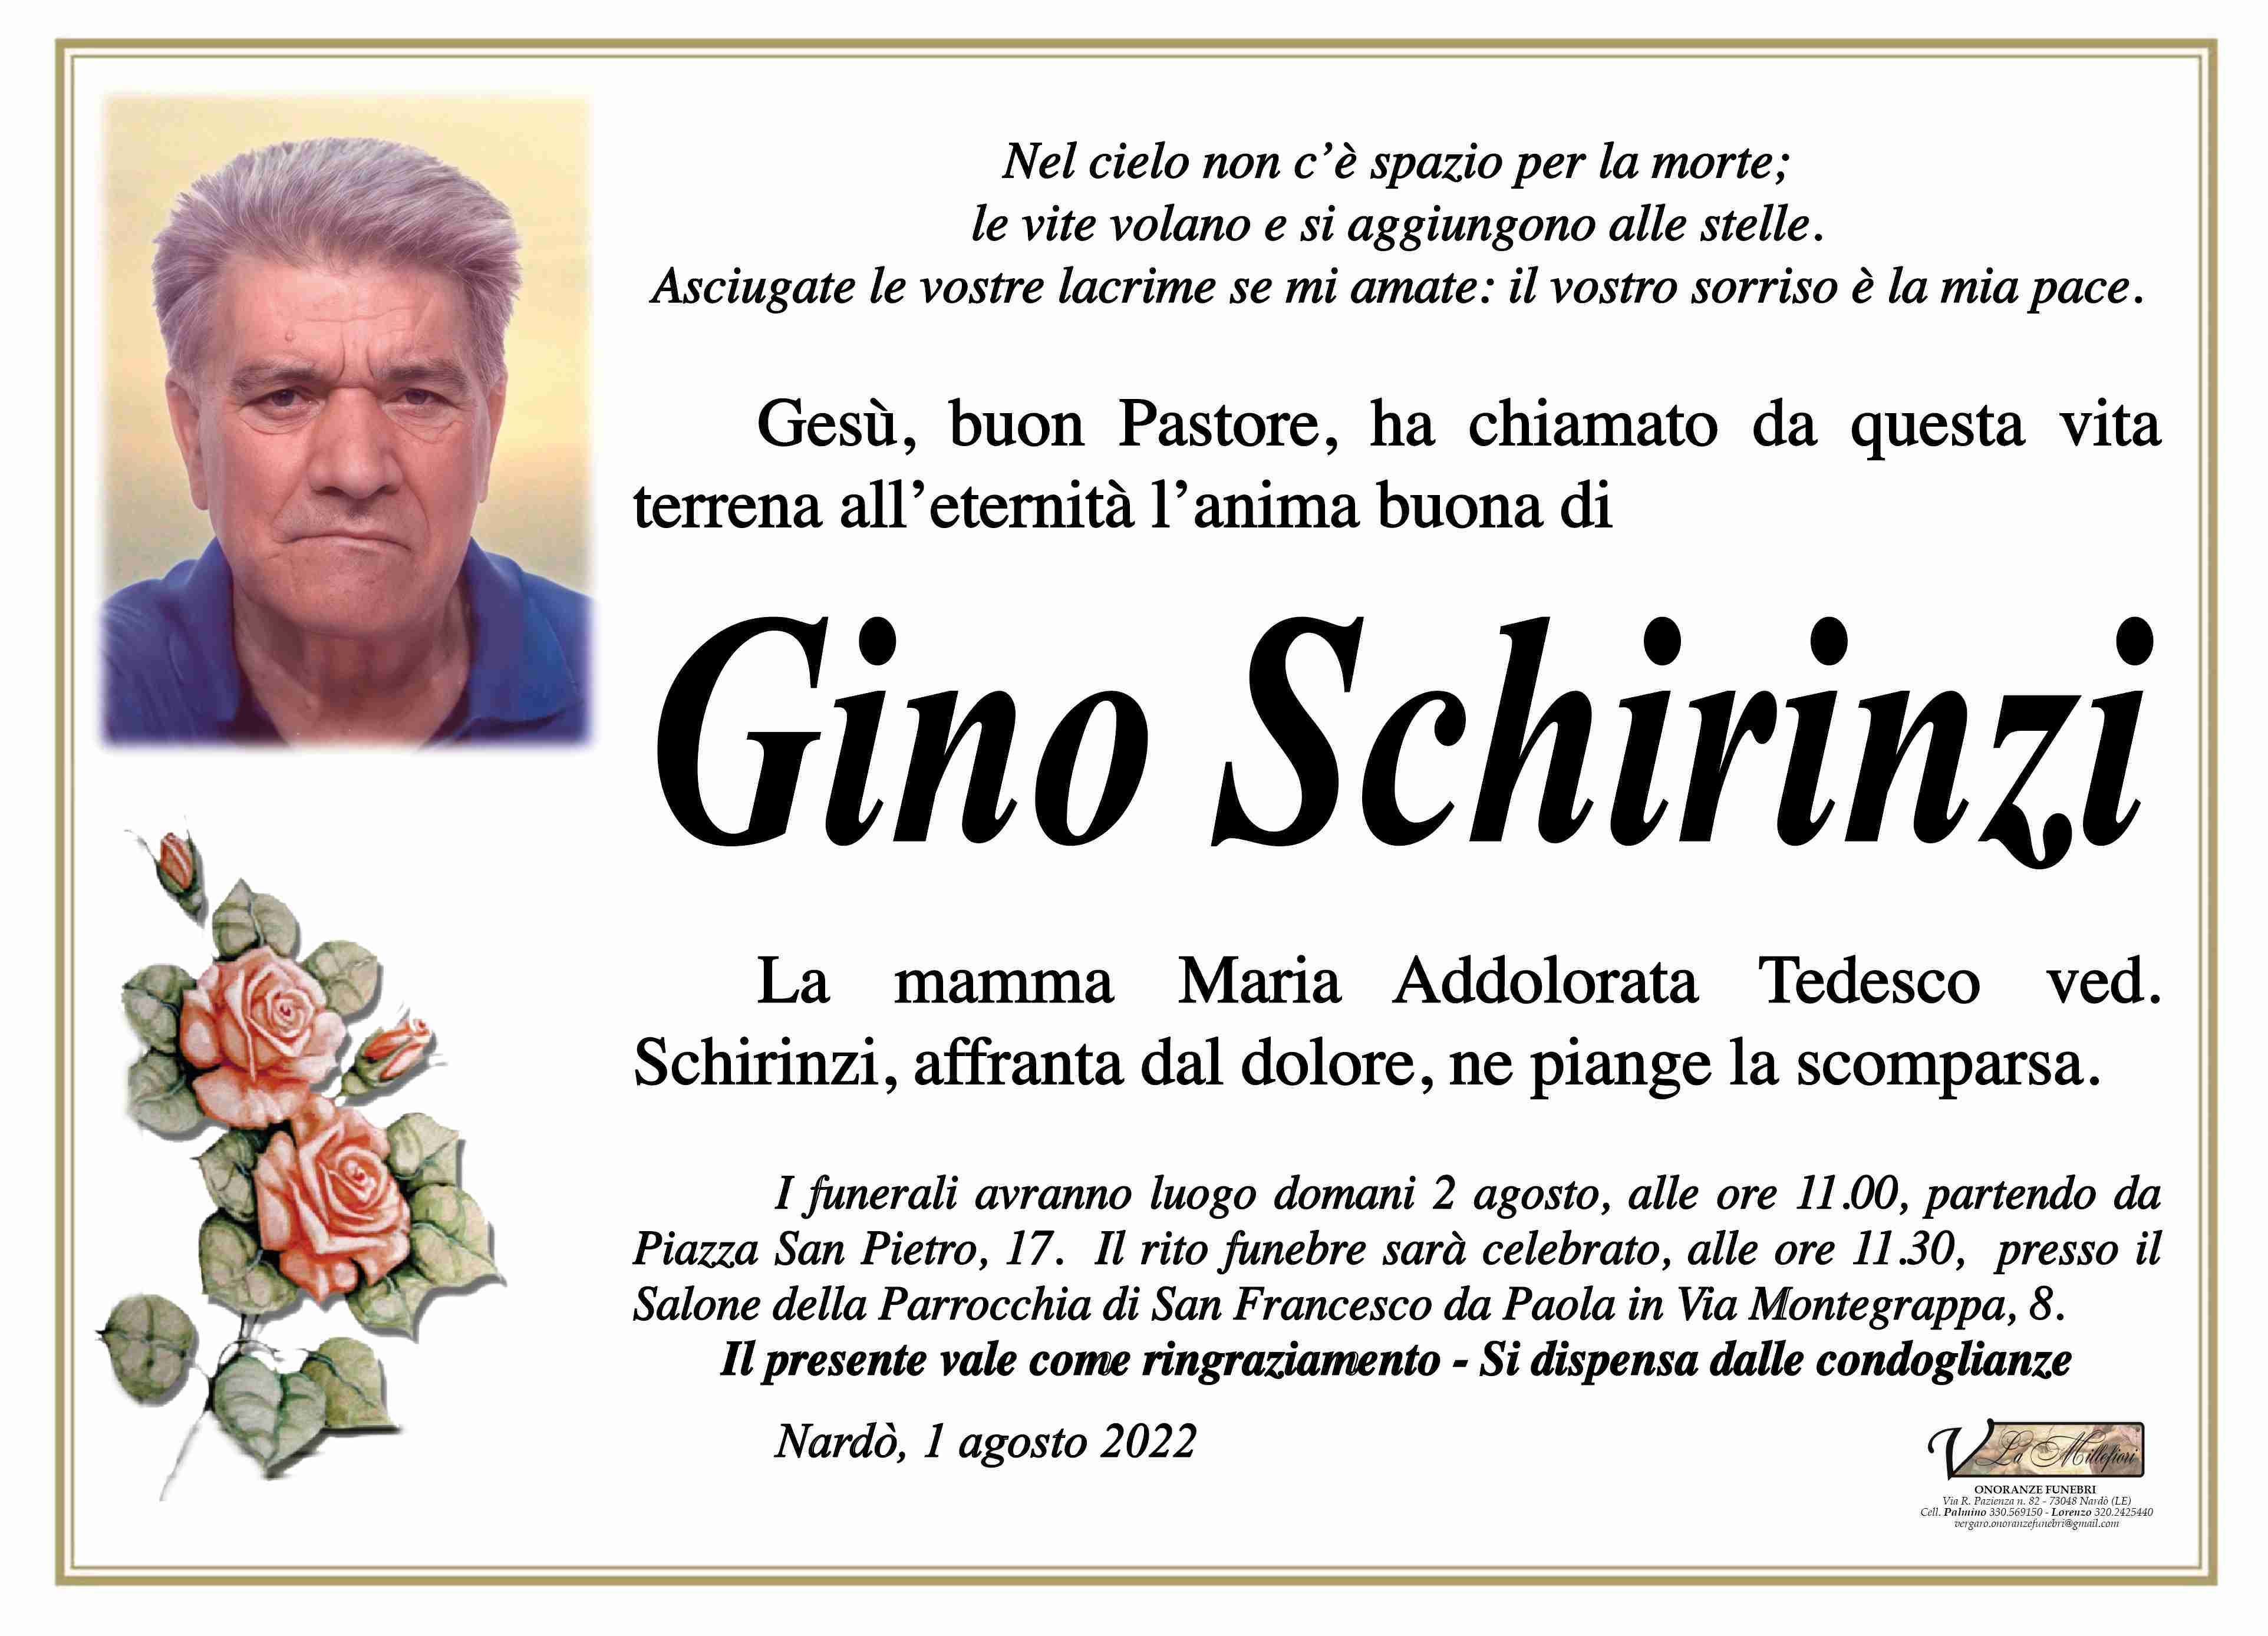 Gino Schirinzi